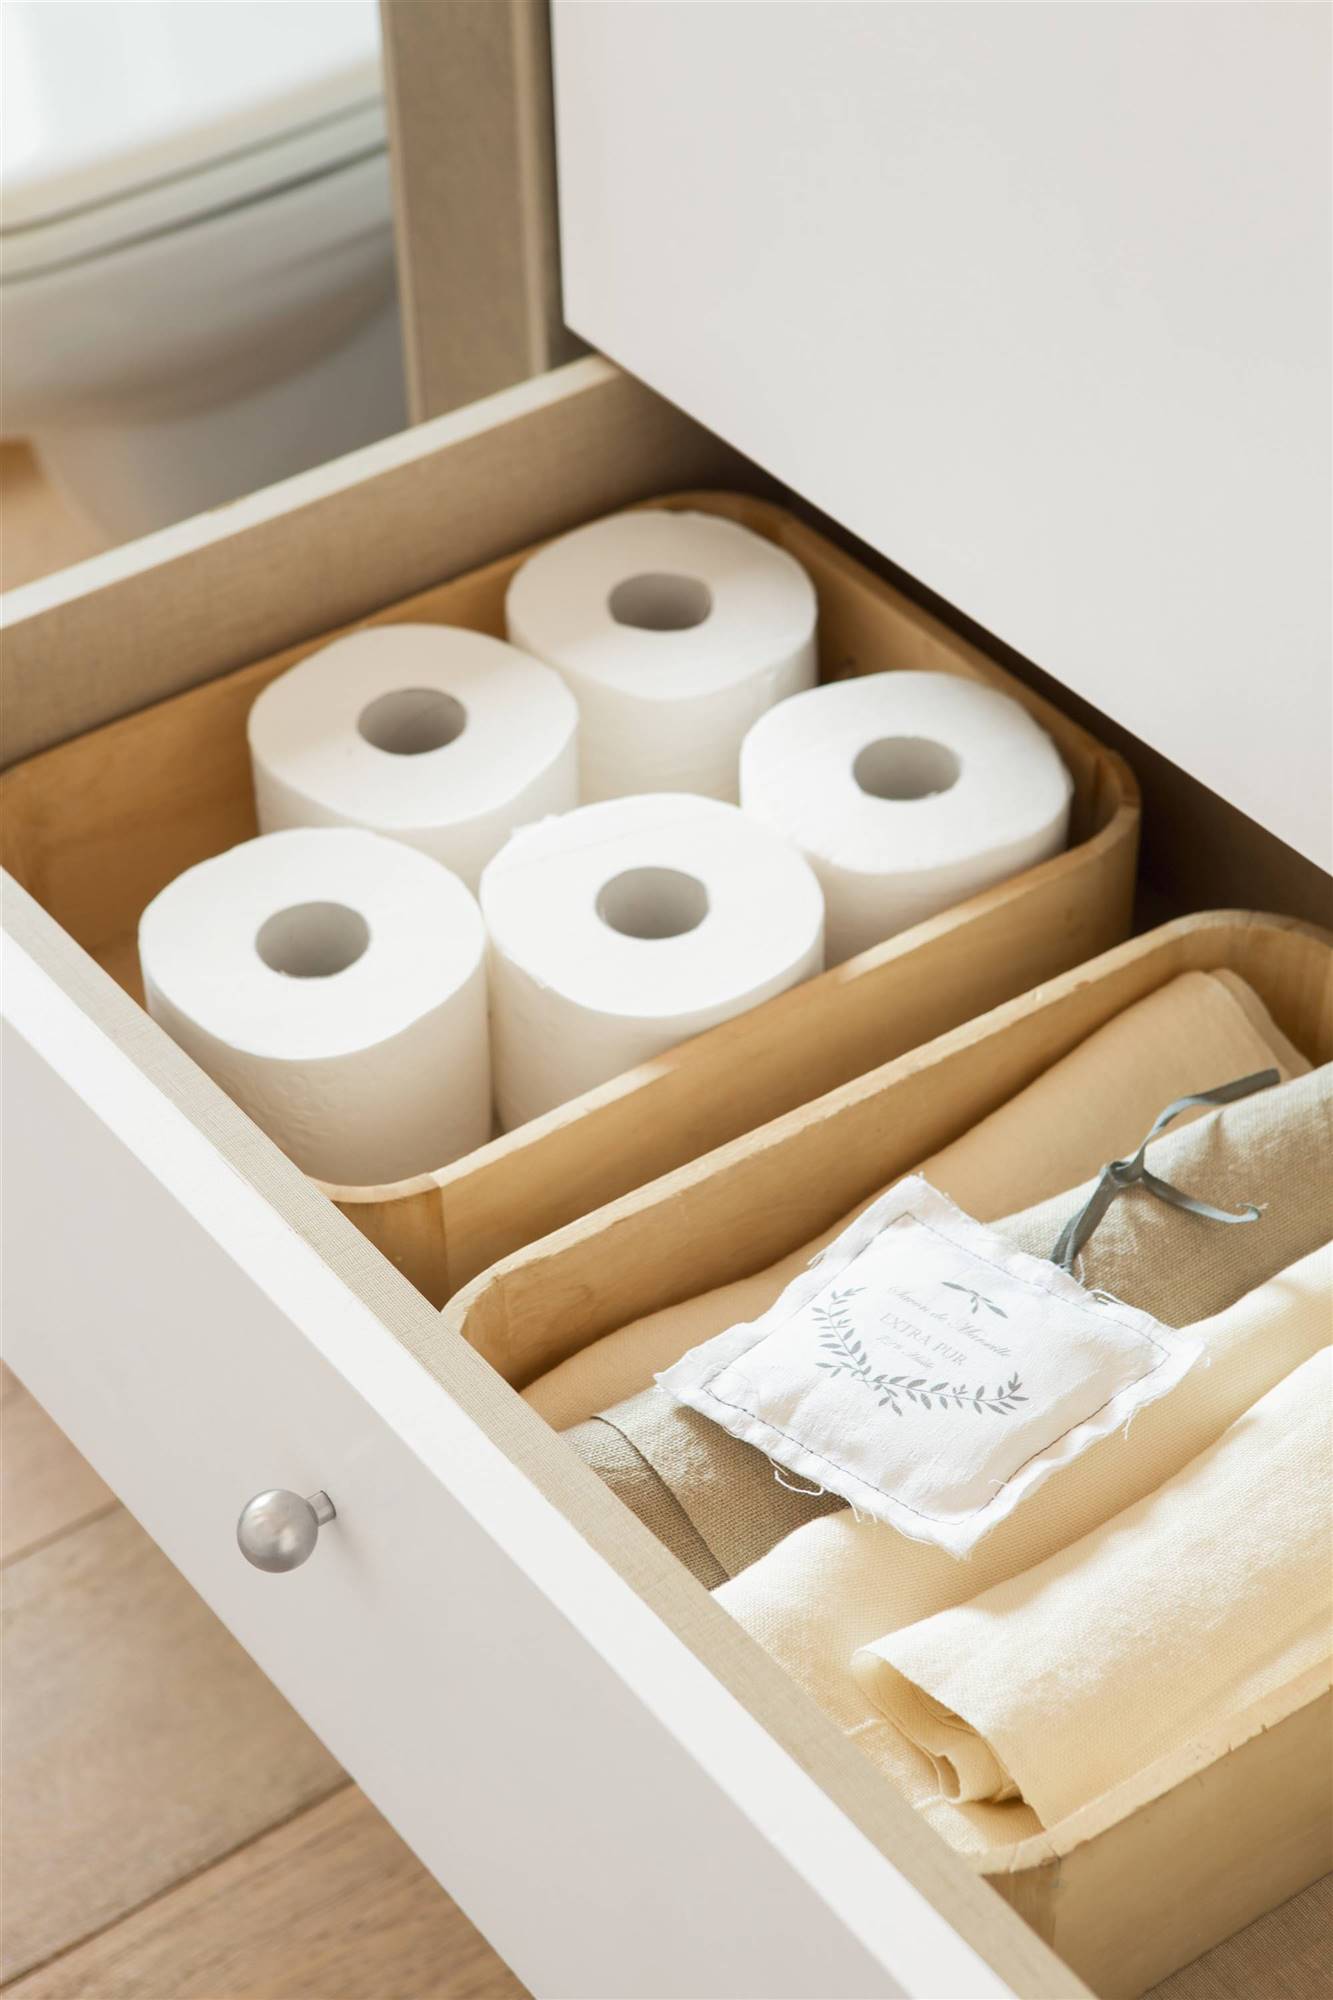 Detalle de cajón con papel higiénico y toallas. 